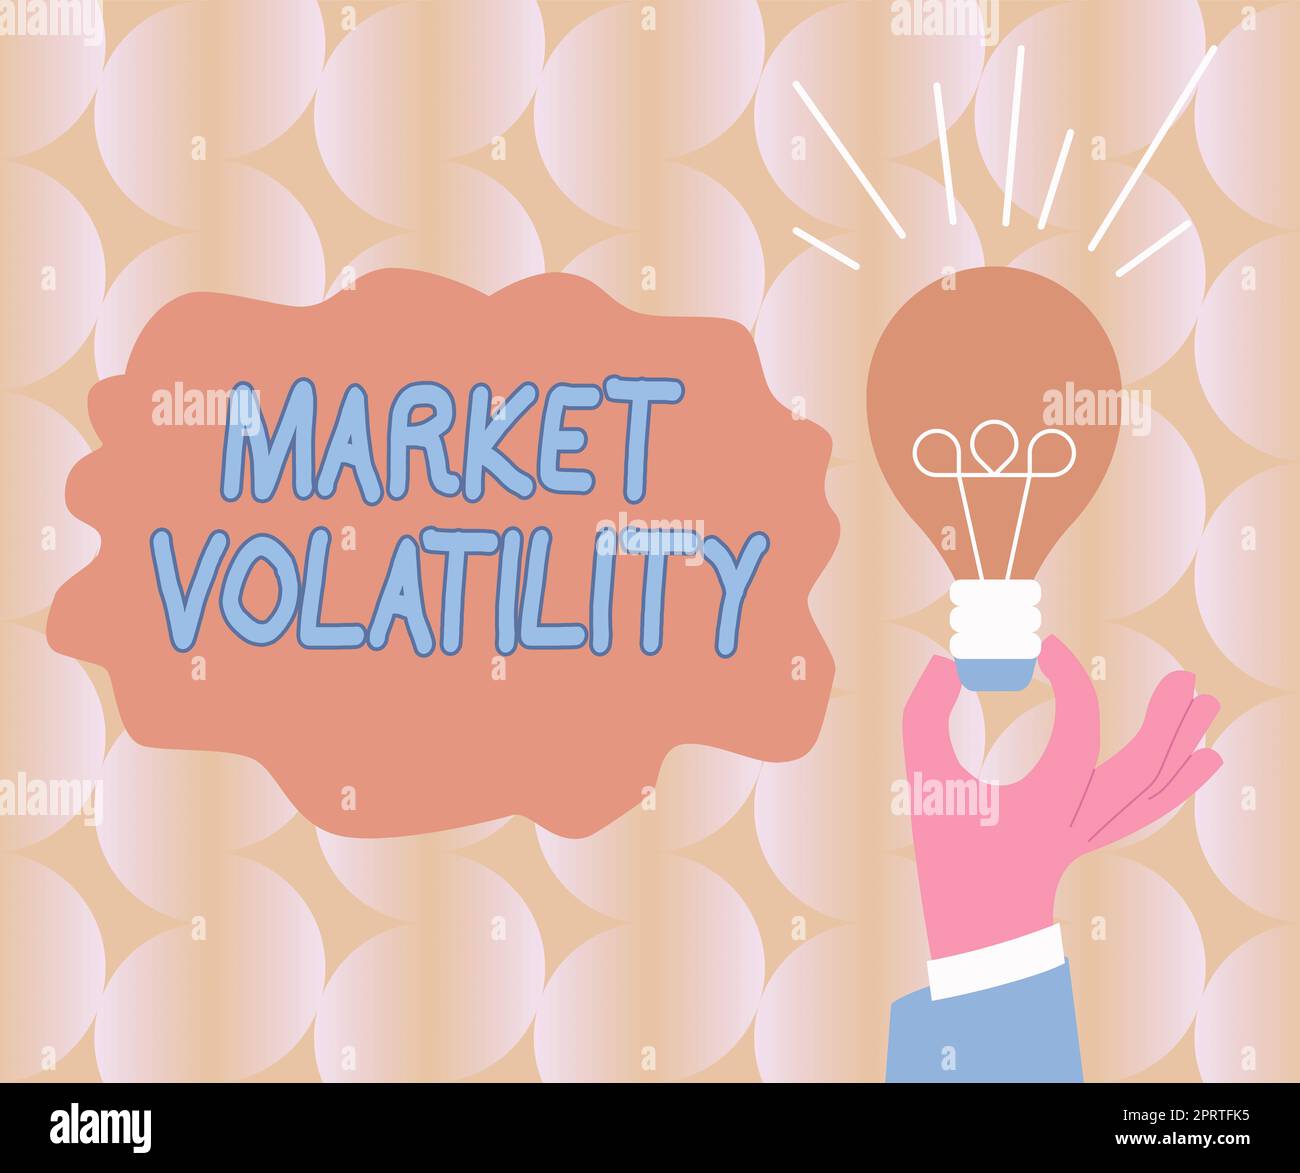 Vorzeichen zur Anzeige der MarktvolatileUnderlying Securities Rates fluktuiert den Stabilitätsstatus. Das Wort für die zugrunde liegenden Wertpapierpreise schwankt den Stabilitätsstatus Stockfoto